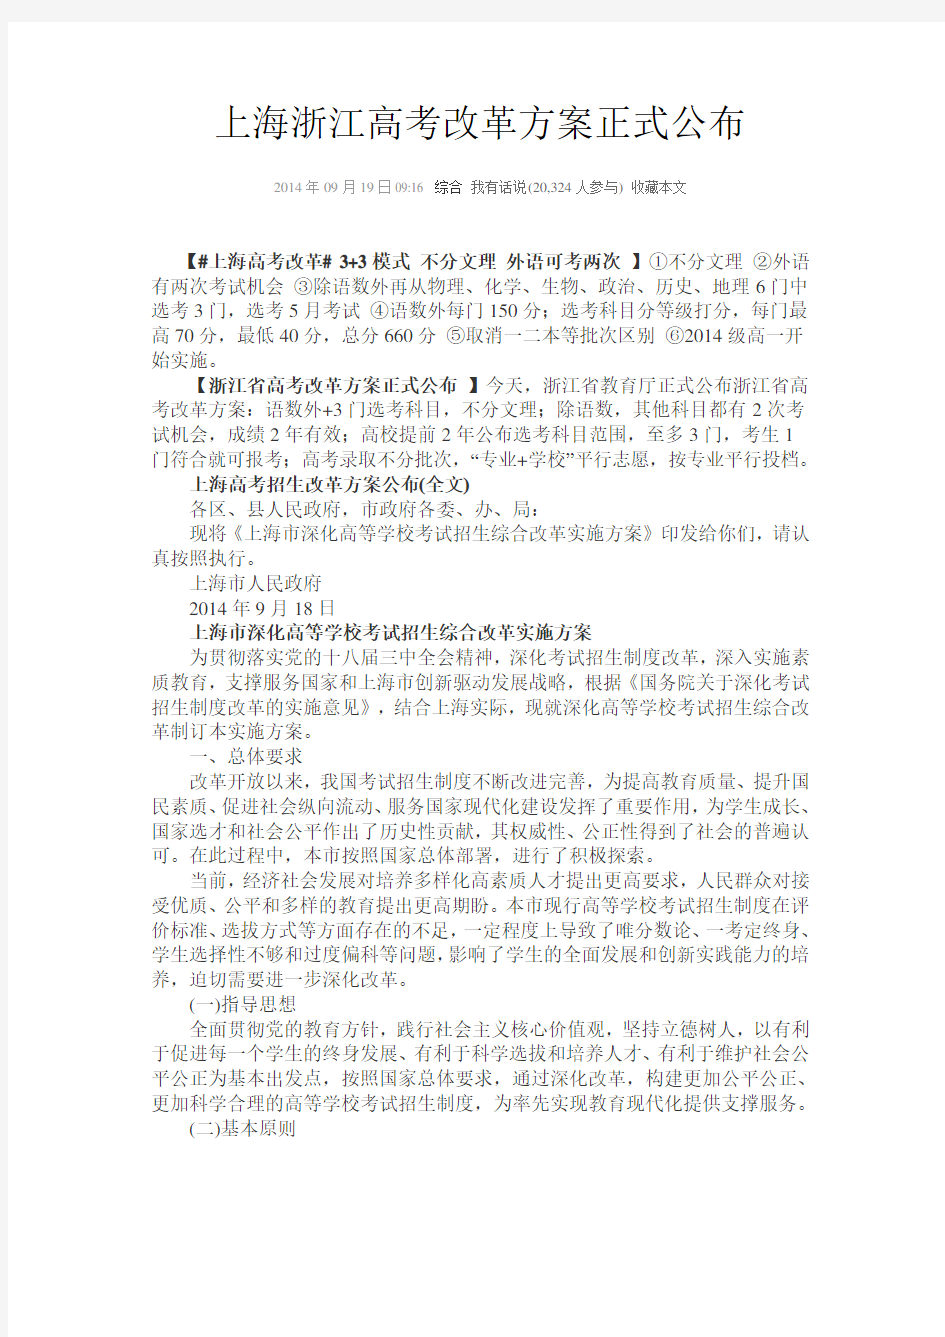 上海浙江高考改革方案正式公布